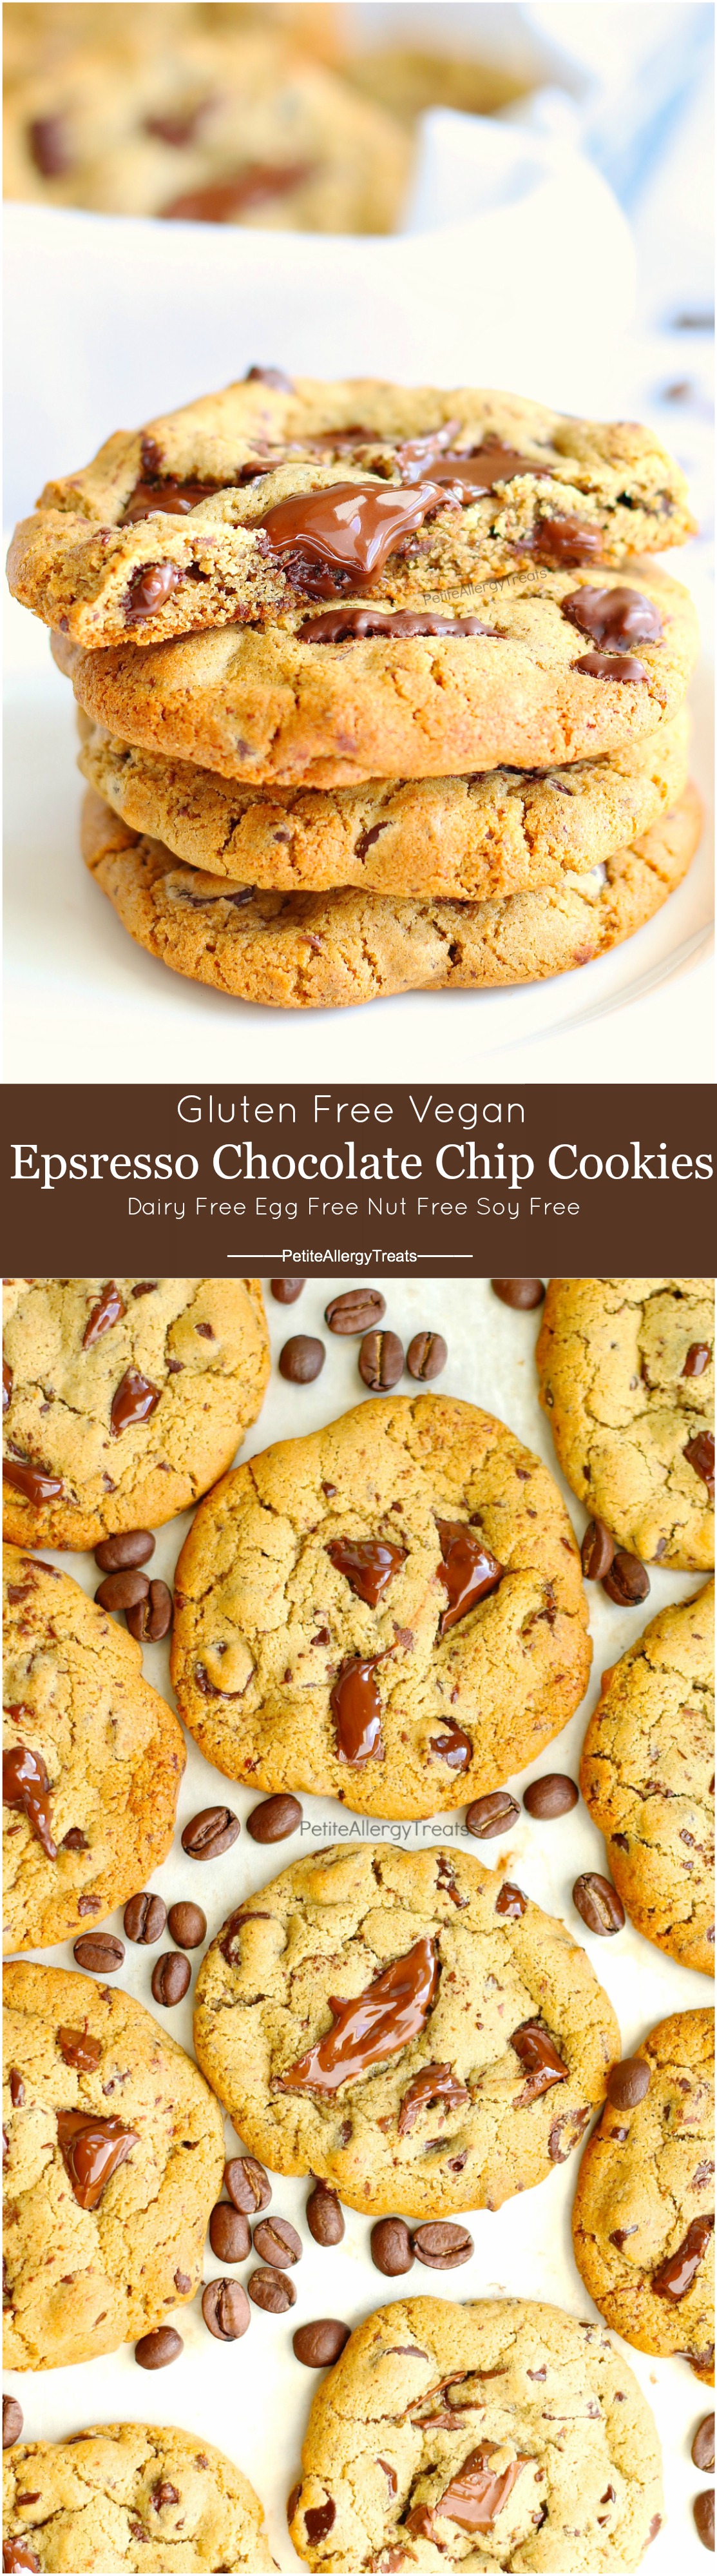 Vegan Gluten Free Espresso Chocolate Chip Cookies Recipe- Gooey egg free vegan espresso chocolate chip cookies! Dairy Free sweet cookies!